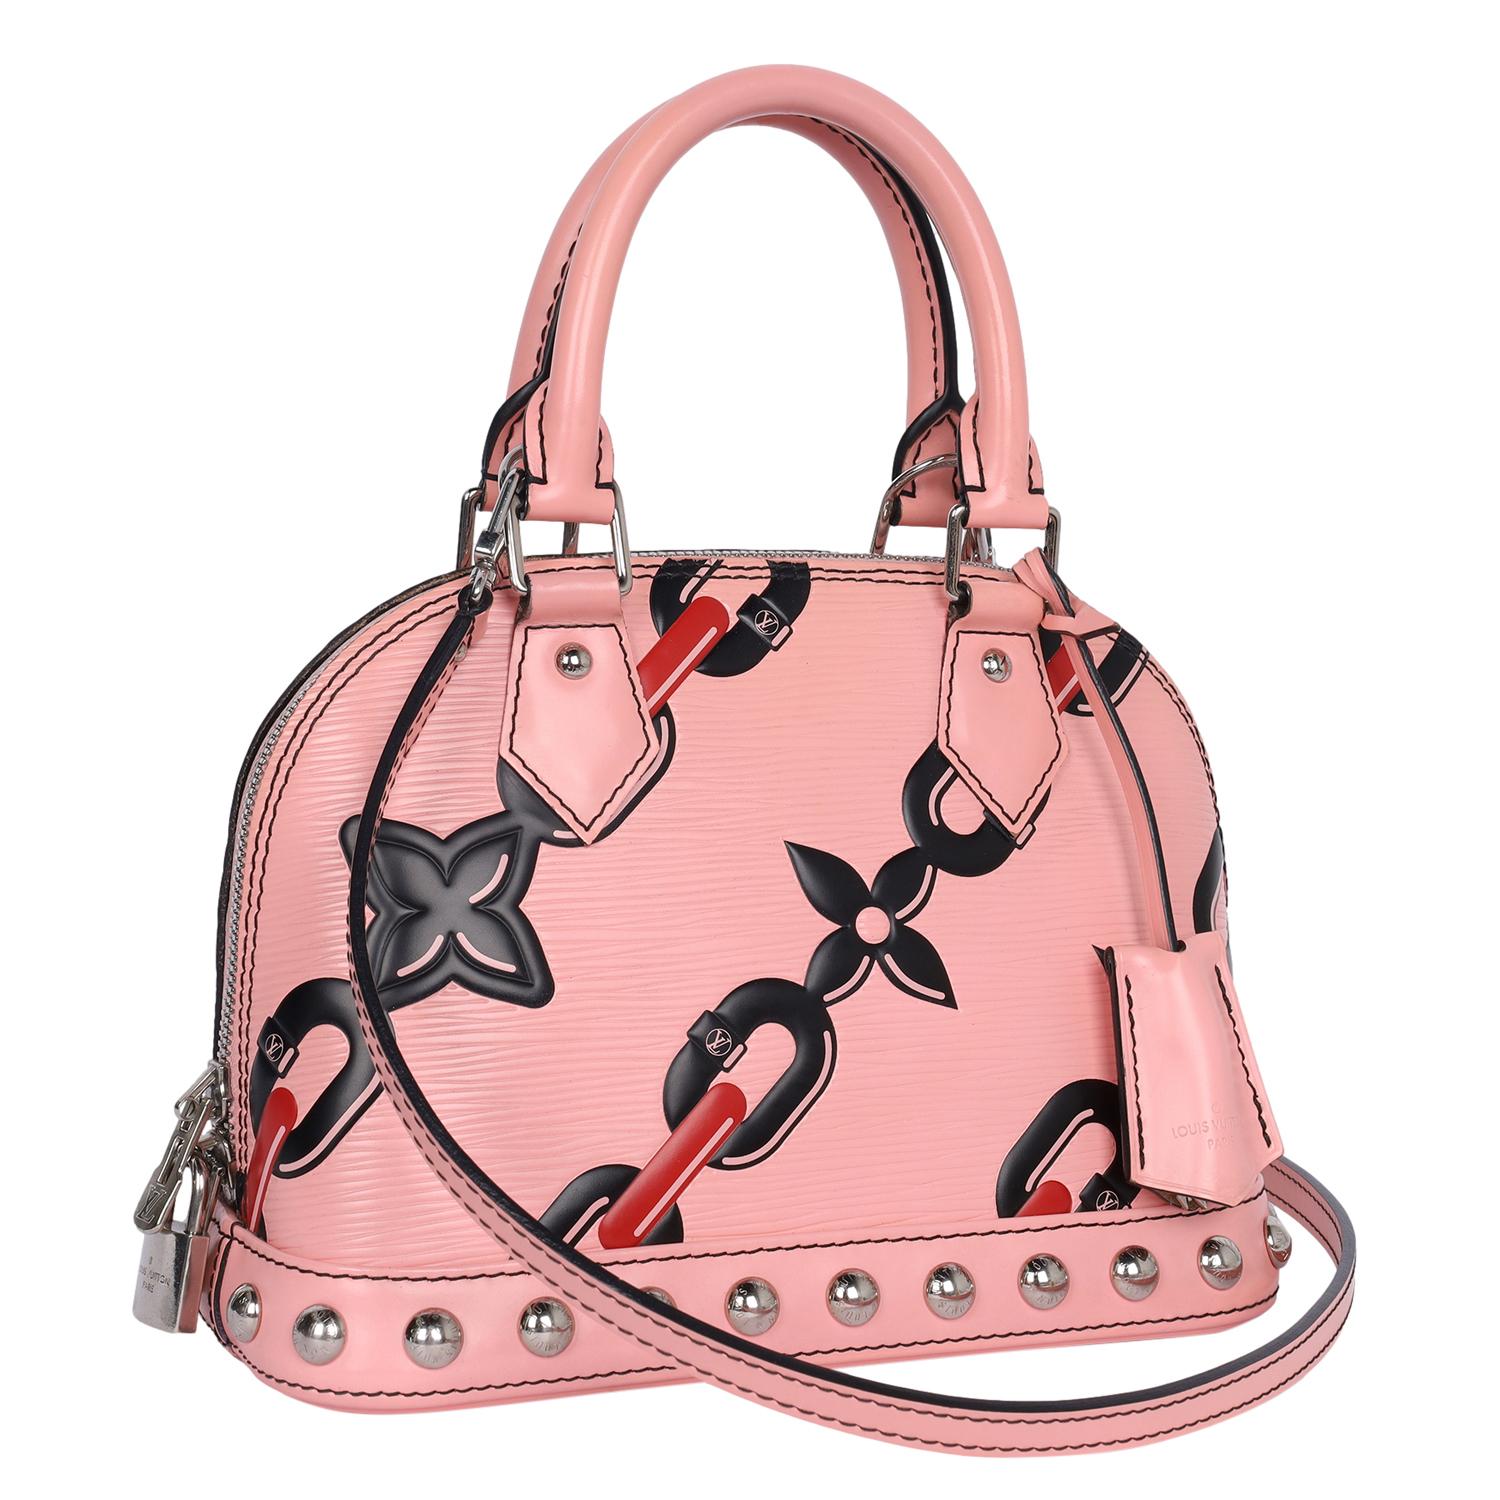 Authentisch, pre-loved Alma BB 2Way Handtasche mit Pink Epi Leder und Detail Kette und Blumen-Design. Mit rosafarbenem Epi-Leder, doppelten gerollten Griffen und abnehmbarem Schulterriemen, 2-Wege-Reißverschluss, silberfarbener Hardware, schwarzem